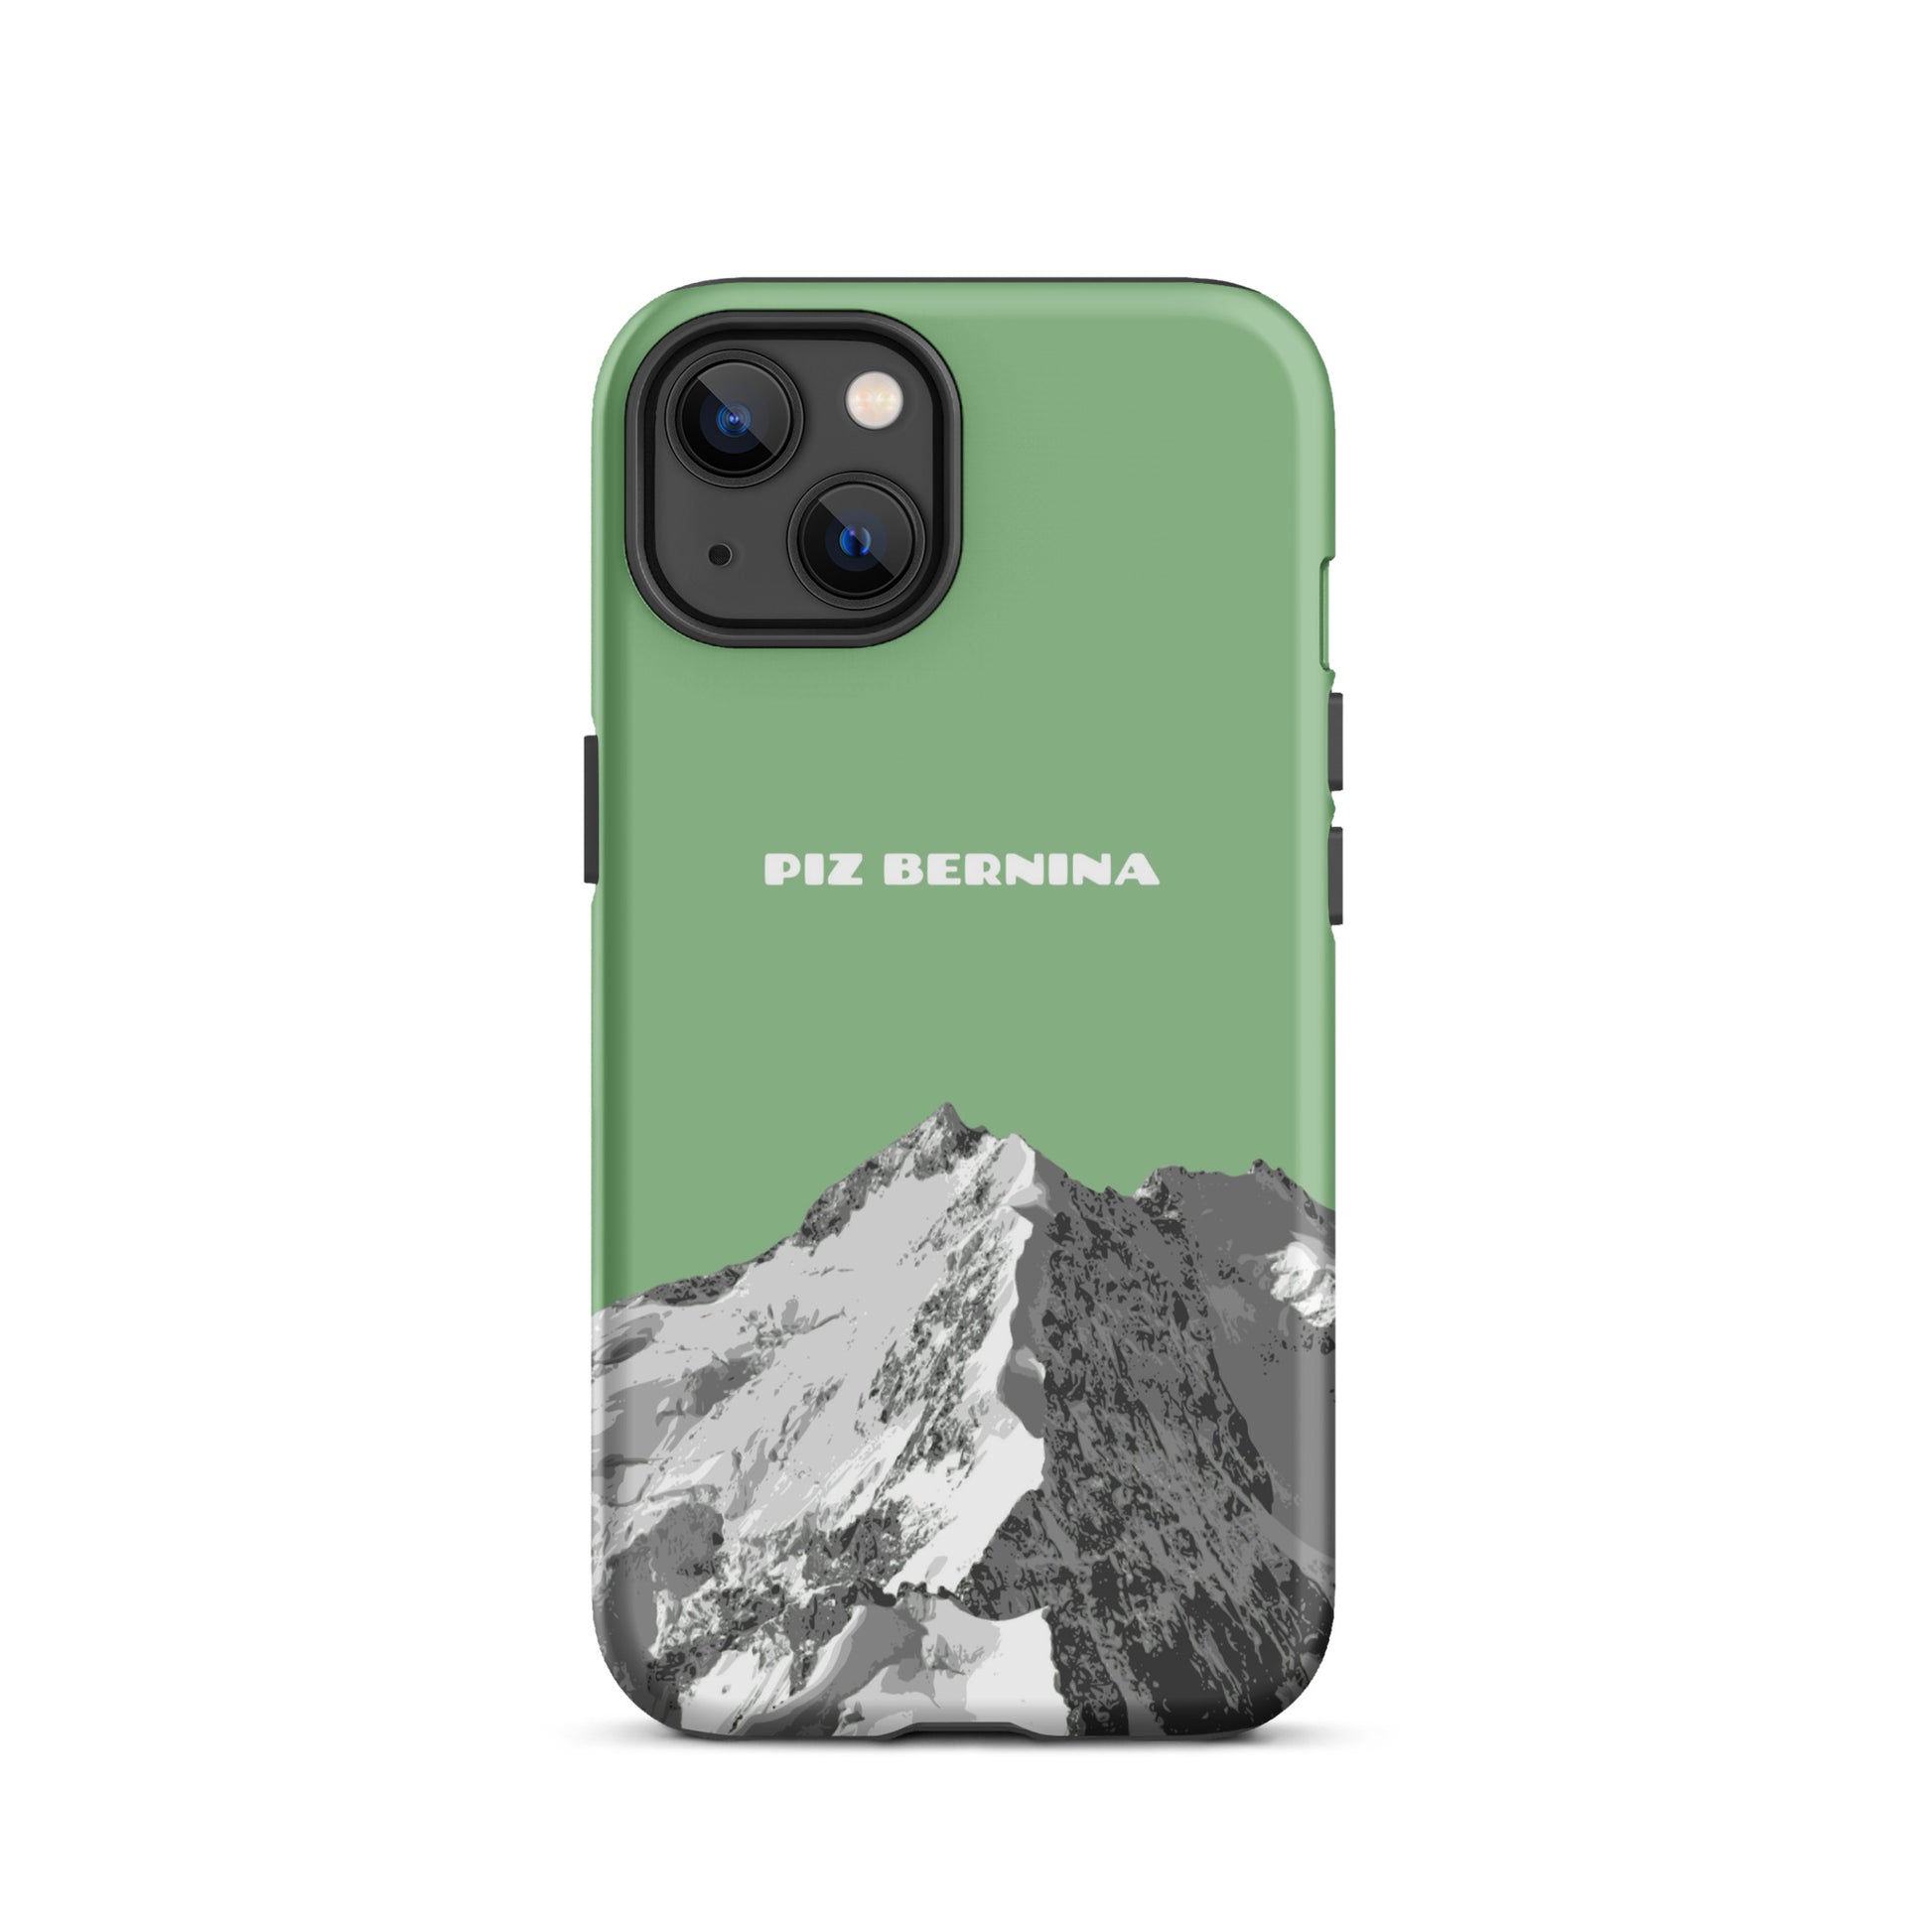 Hülle für das iPhone 13 von Apple in der Farbe Hellgrün, dass den Piz Bernina in Graubünden zeigt.